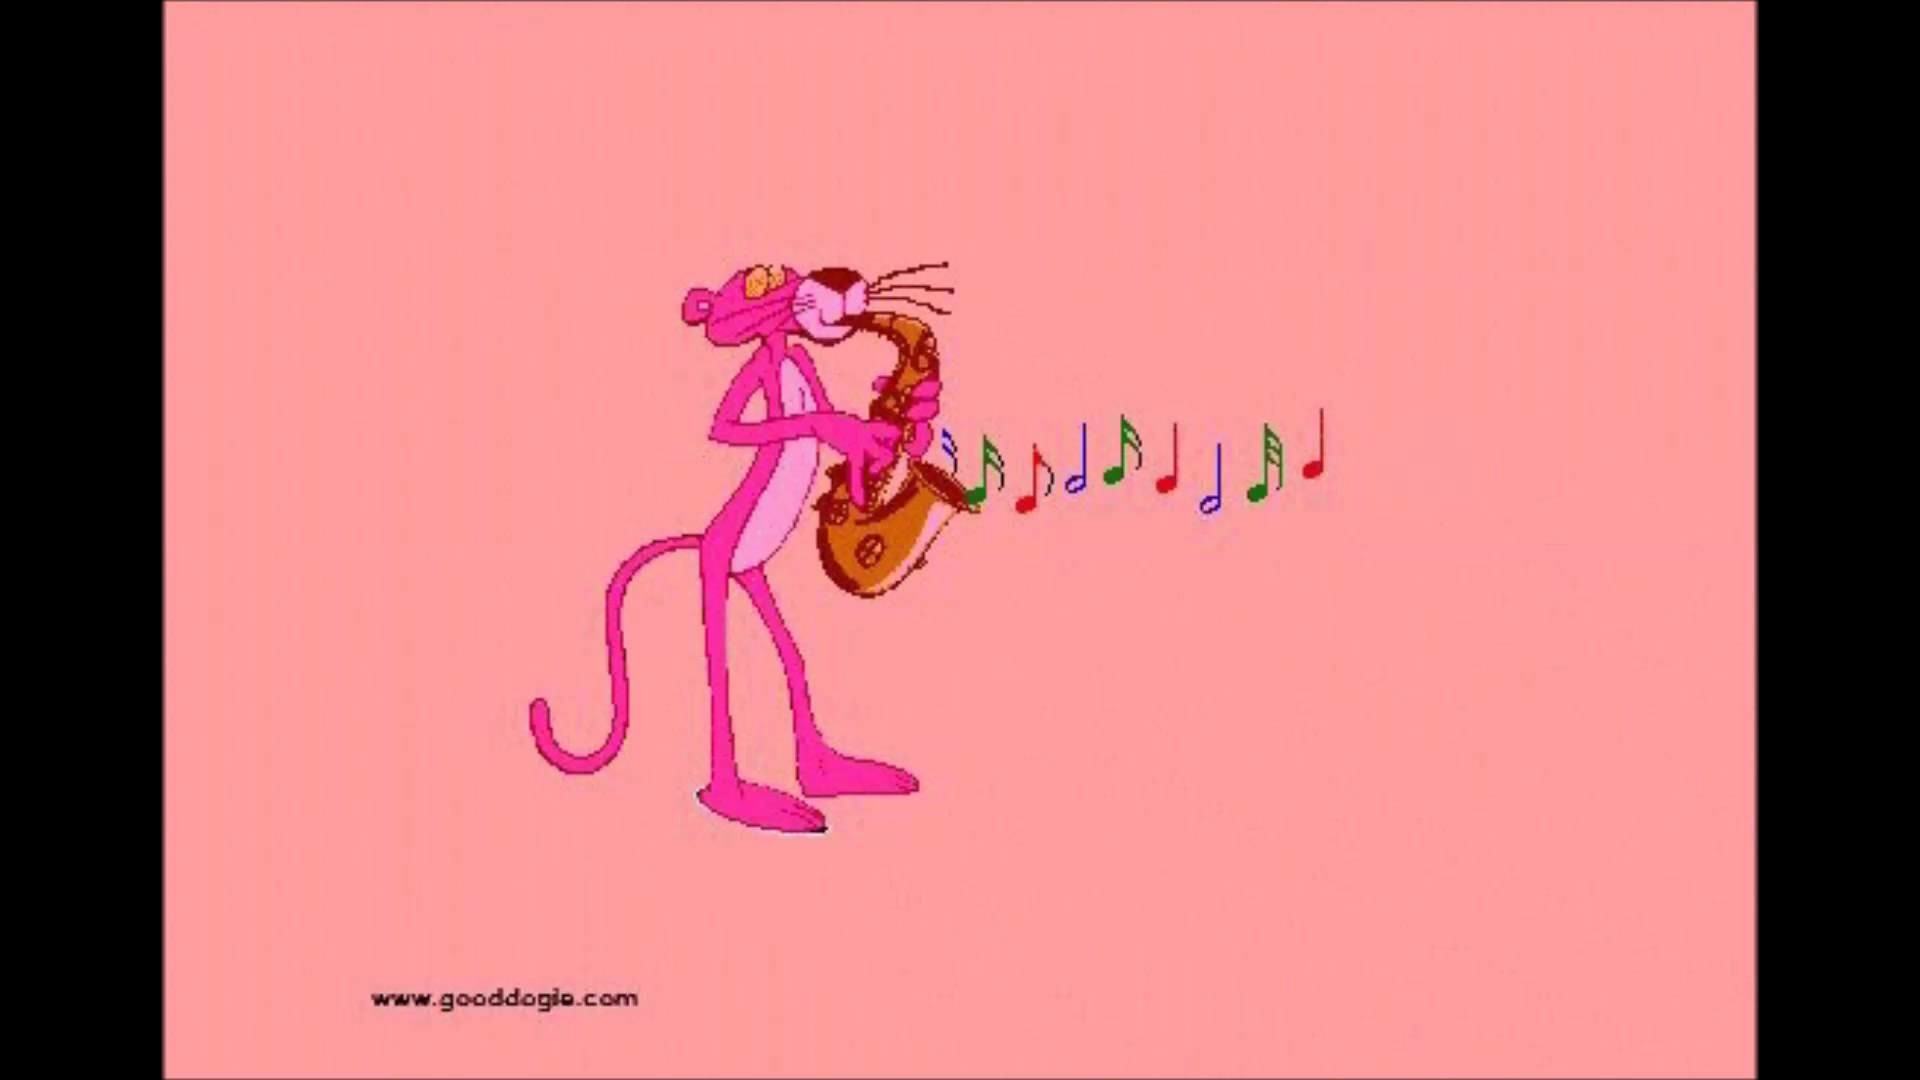 Алиса поставь мне песню розовая пантера